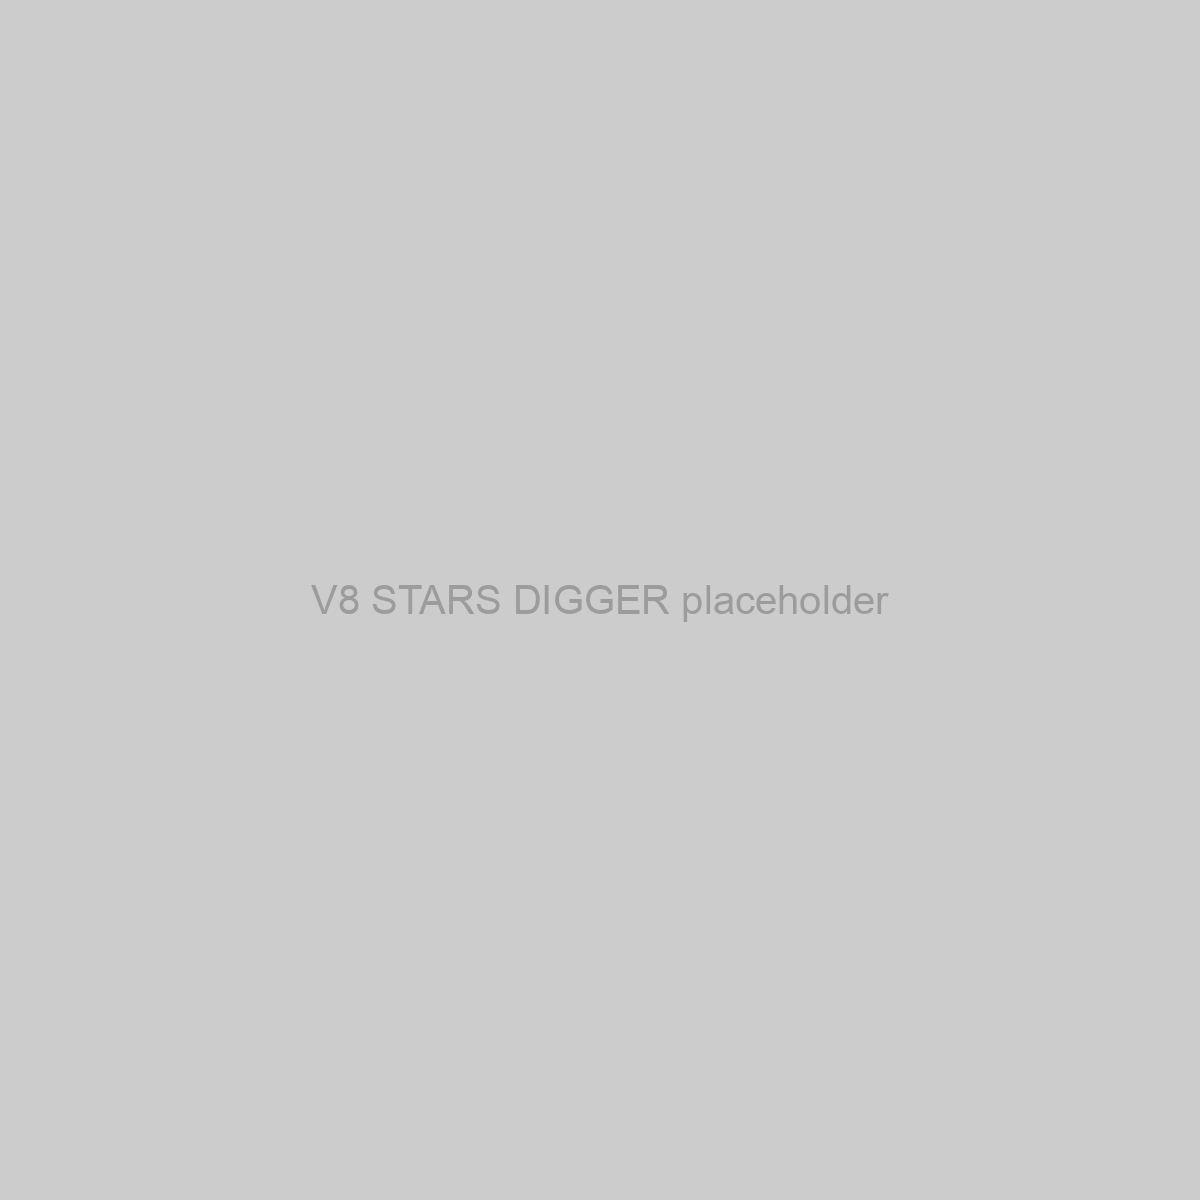 V8 STARS DIGGER Placeholder Image